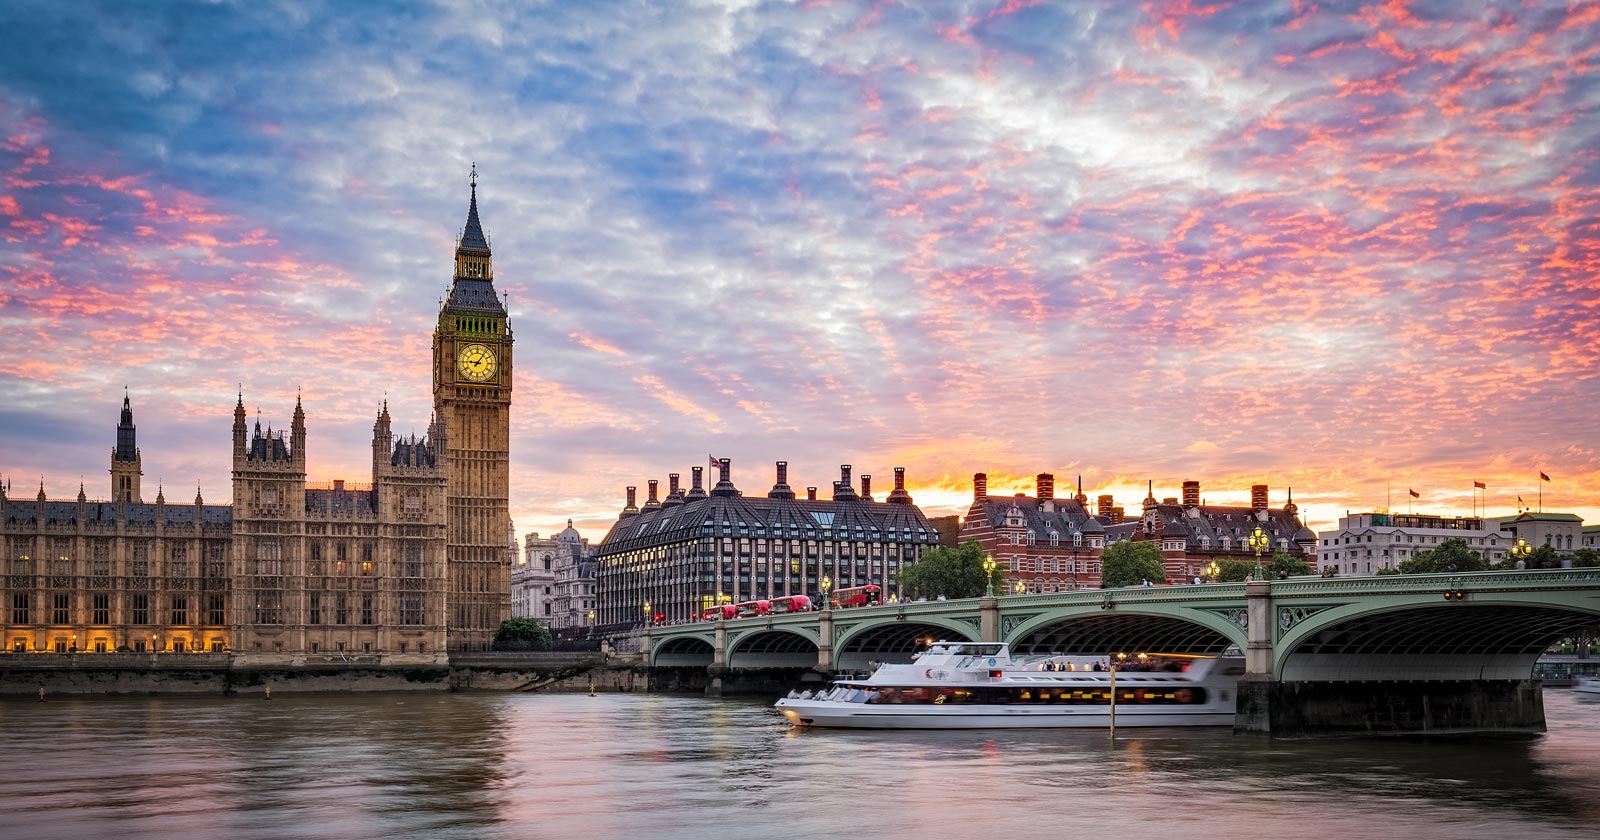 Palacio de Westminster y Big Ben, Londres